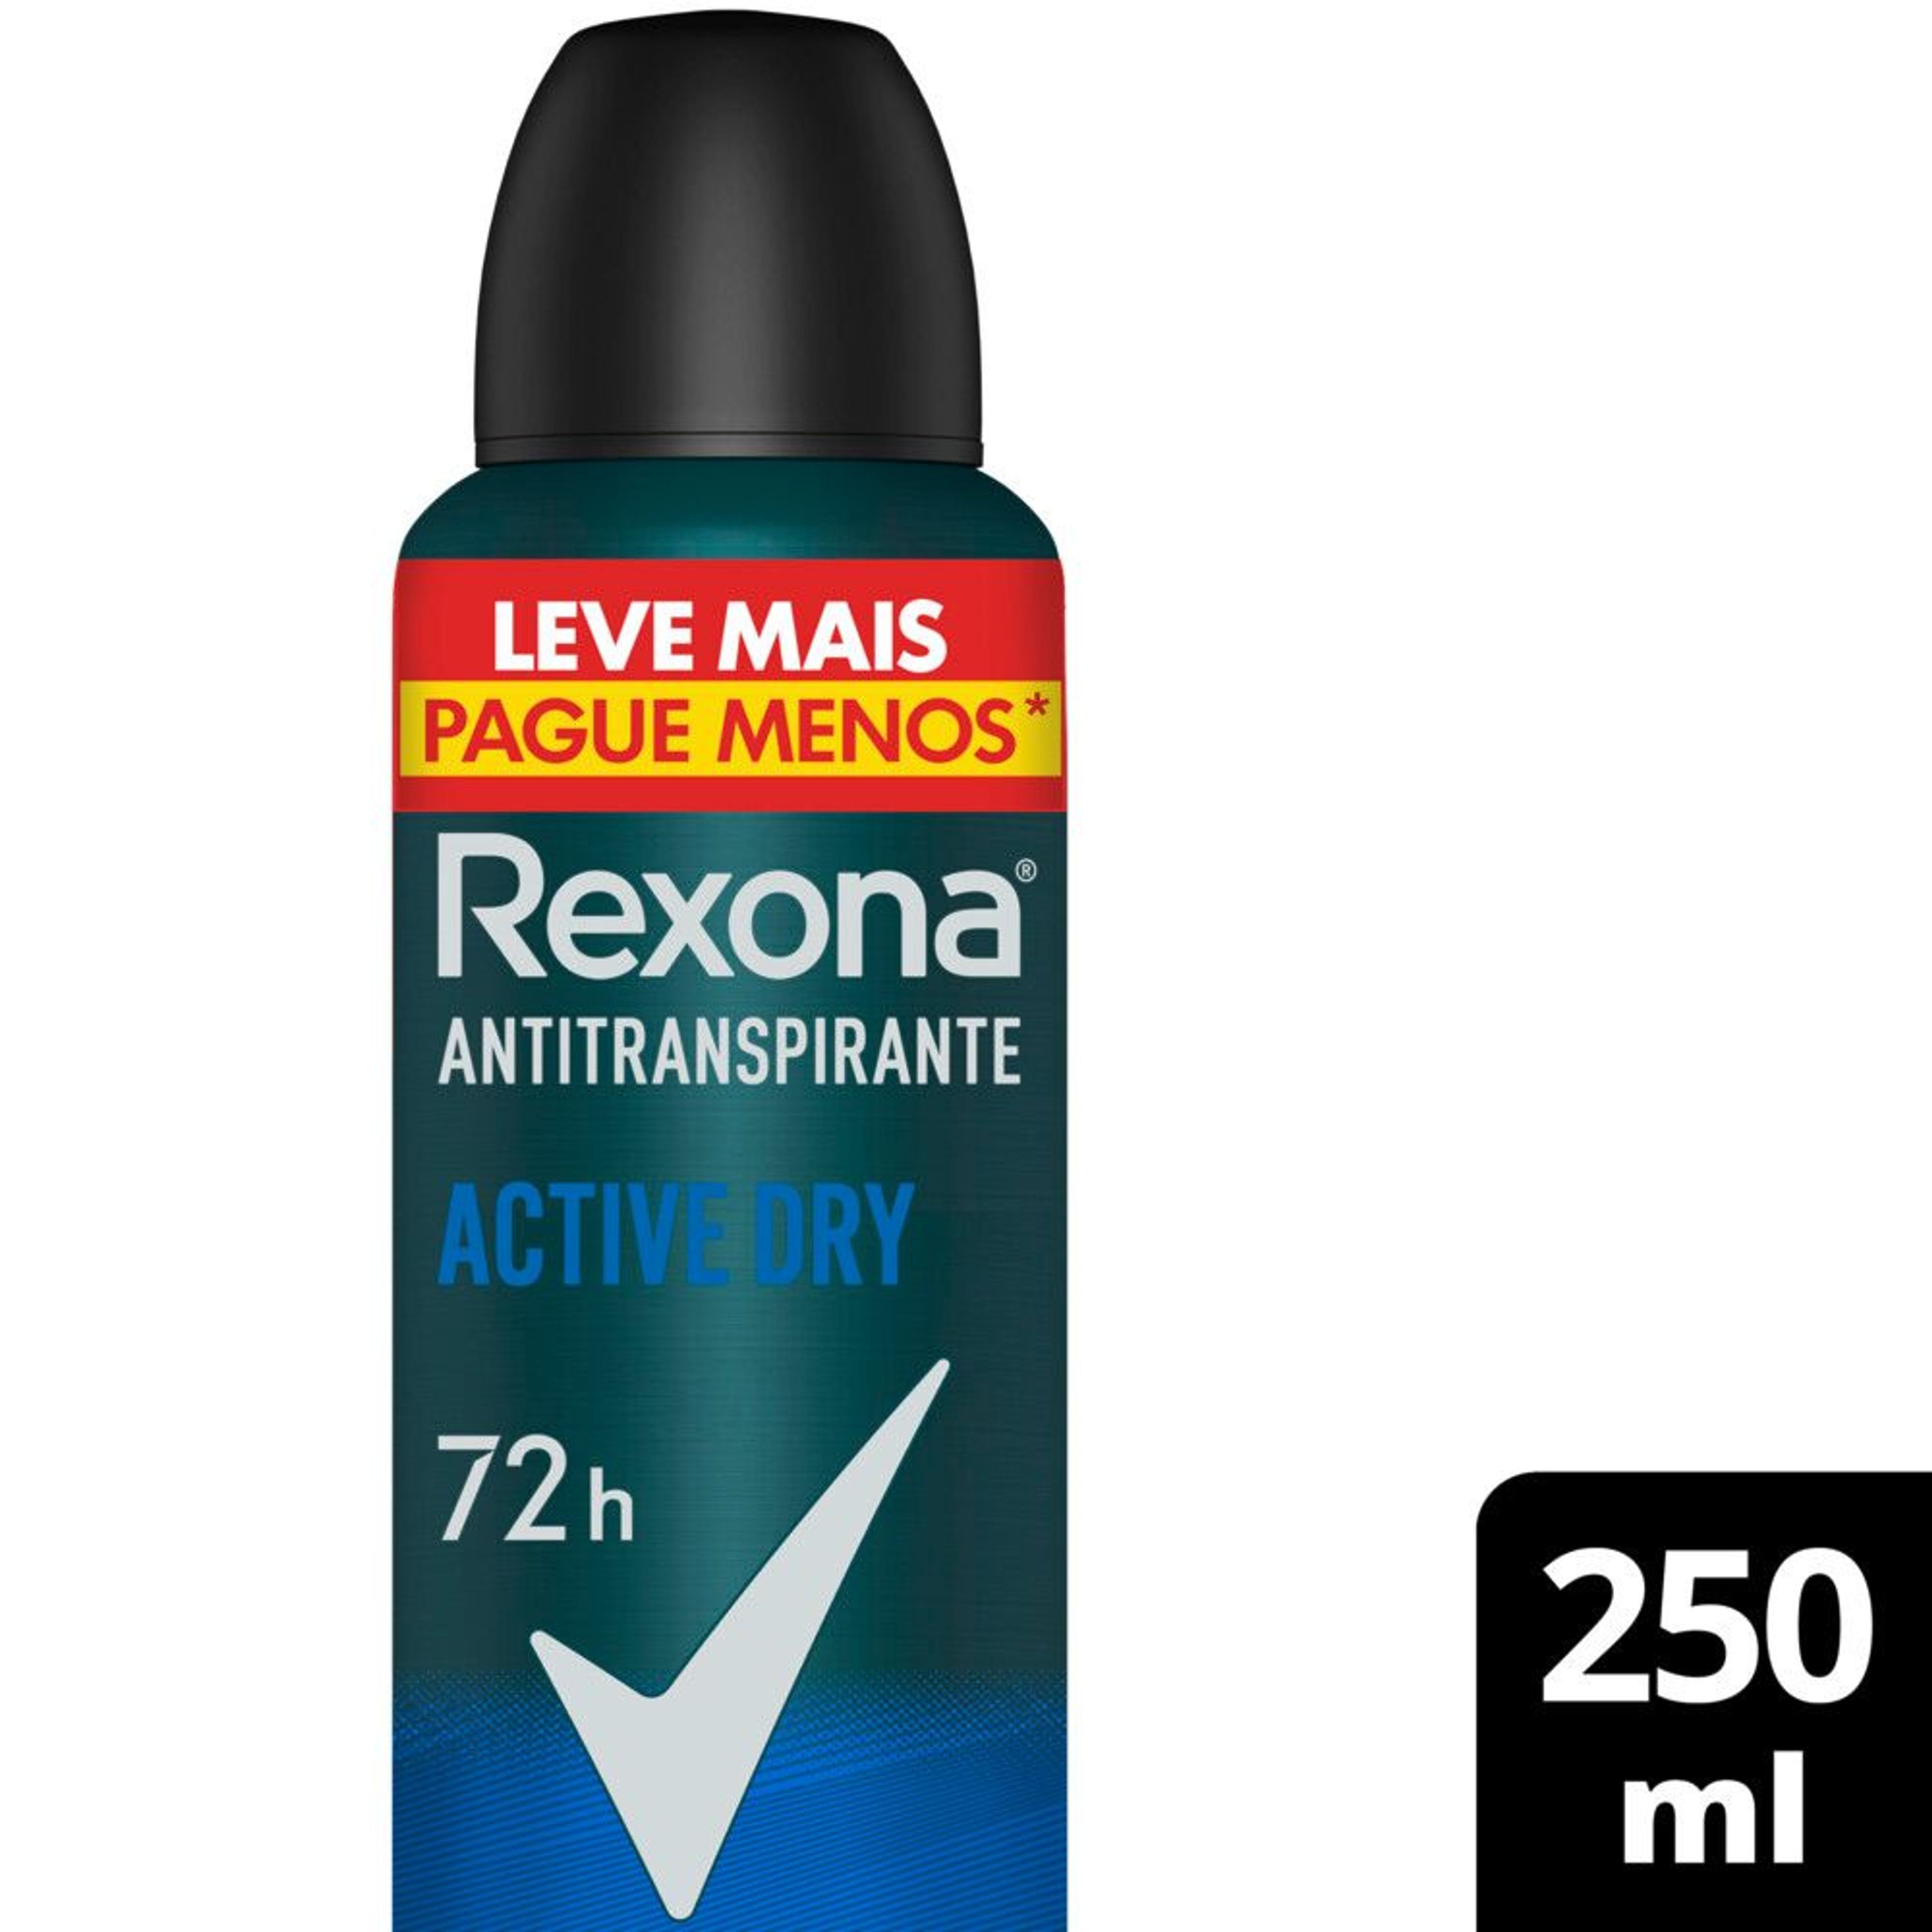  REXONA desodorante CLINICAL antitranspirante stress